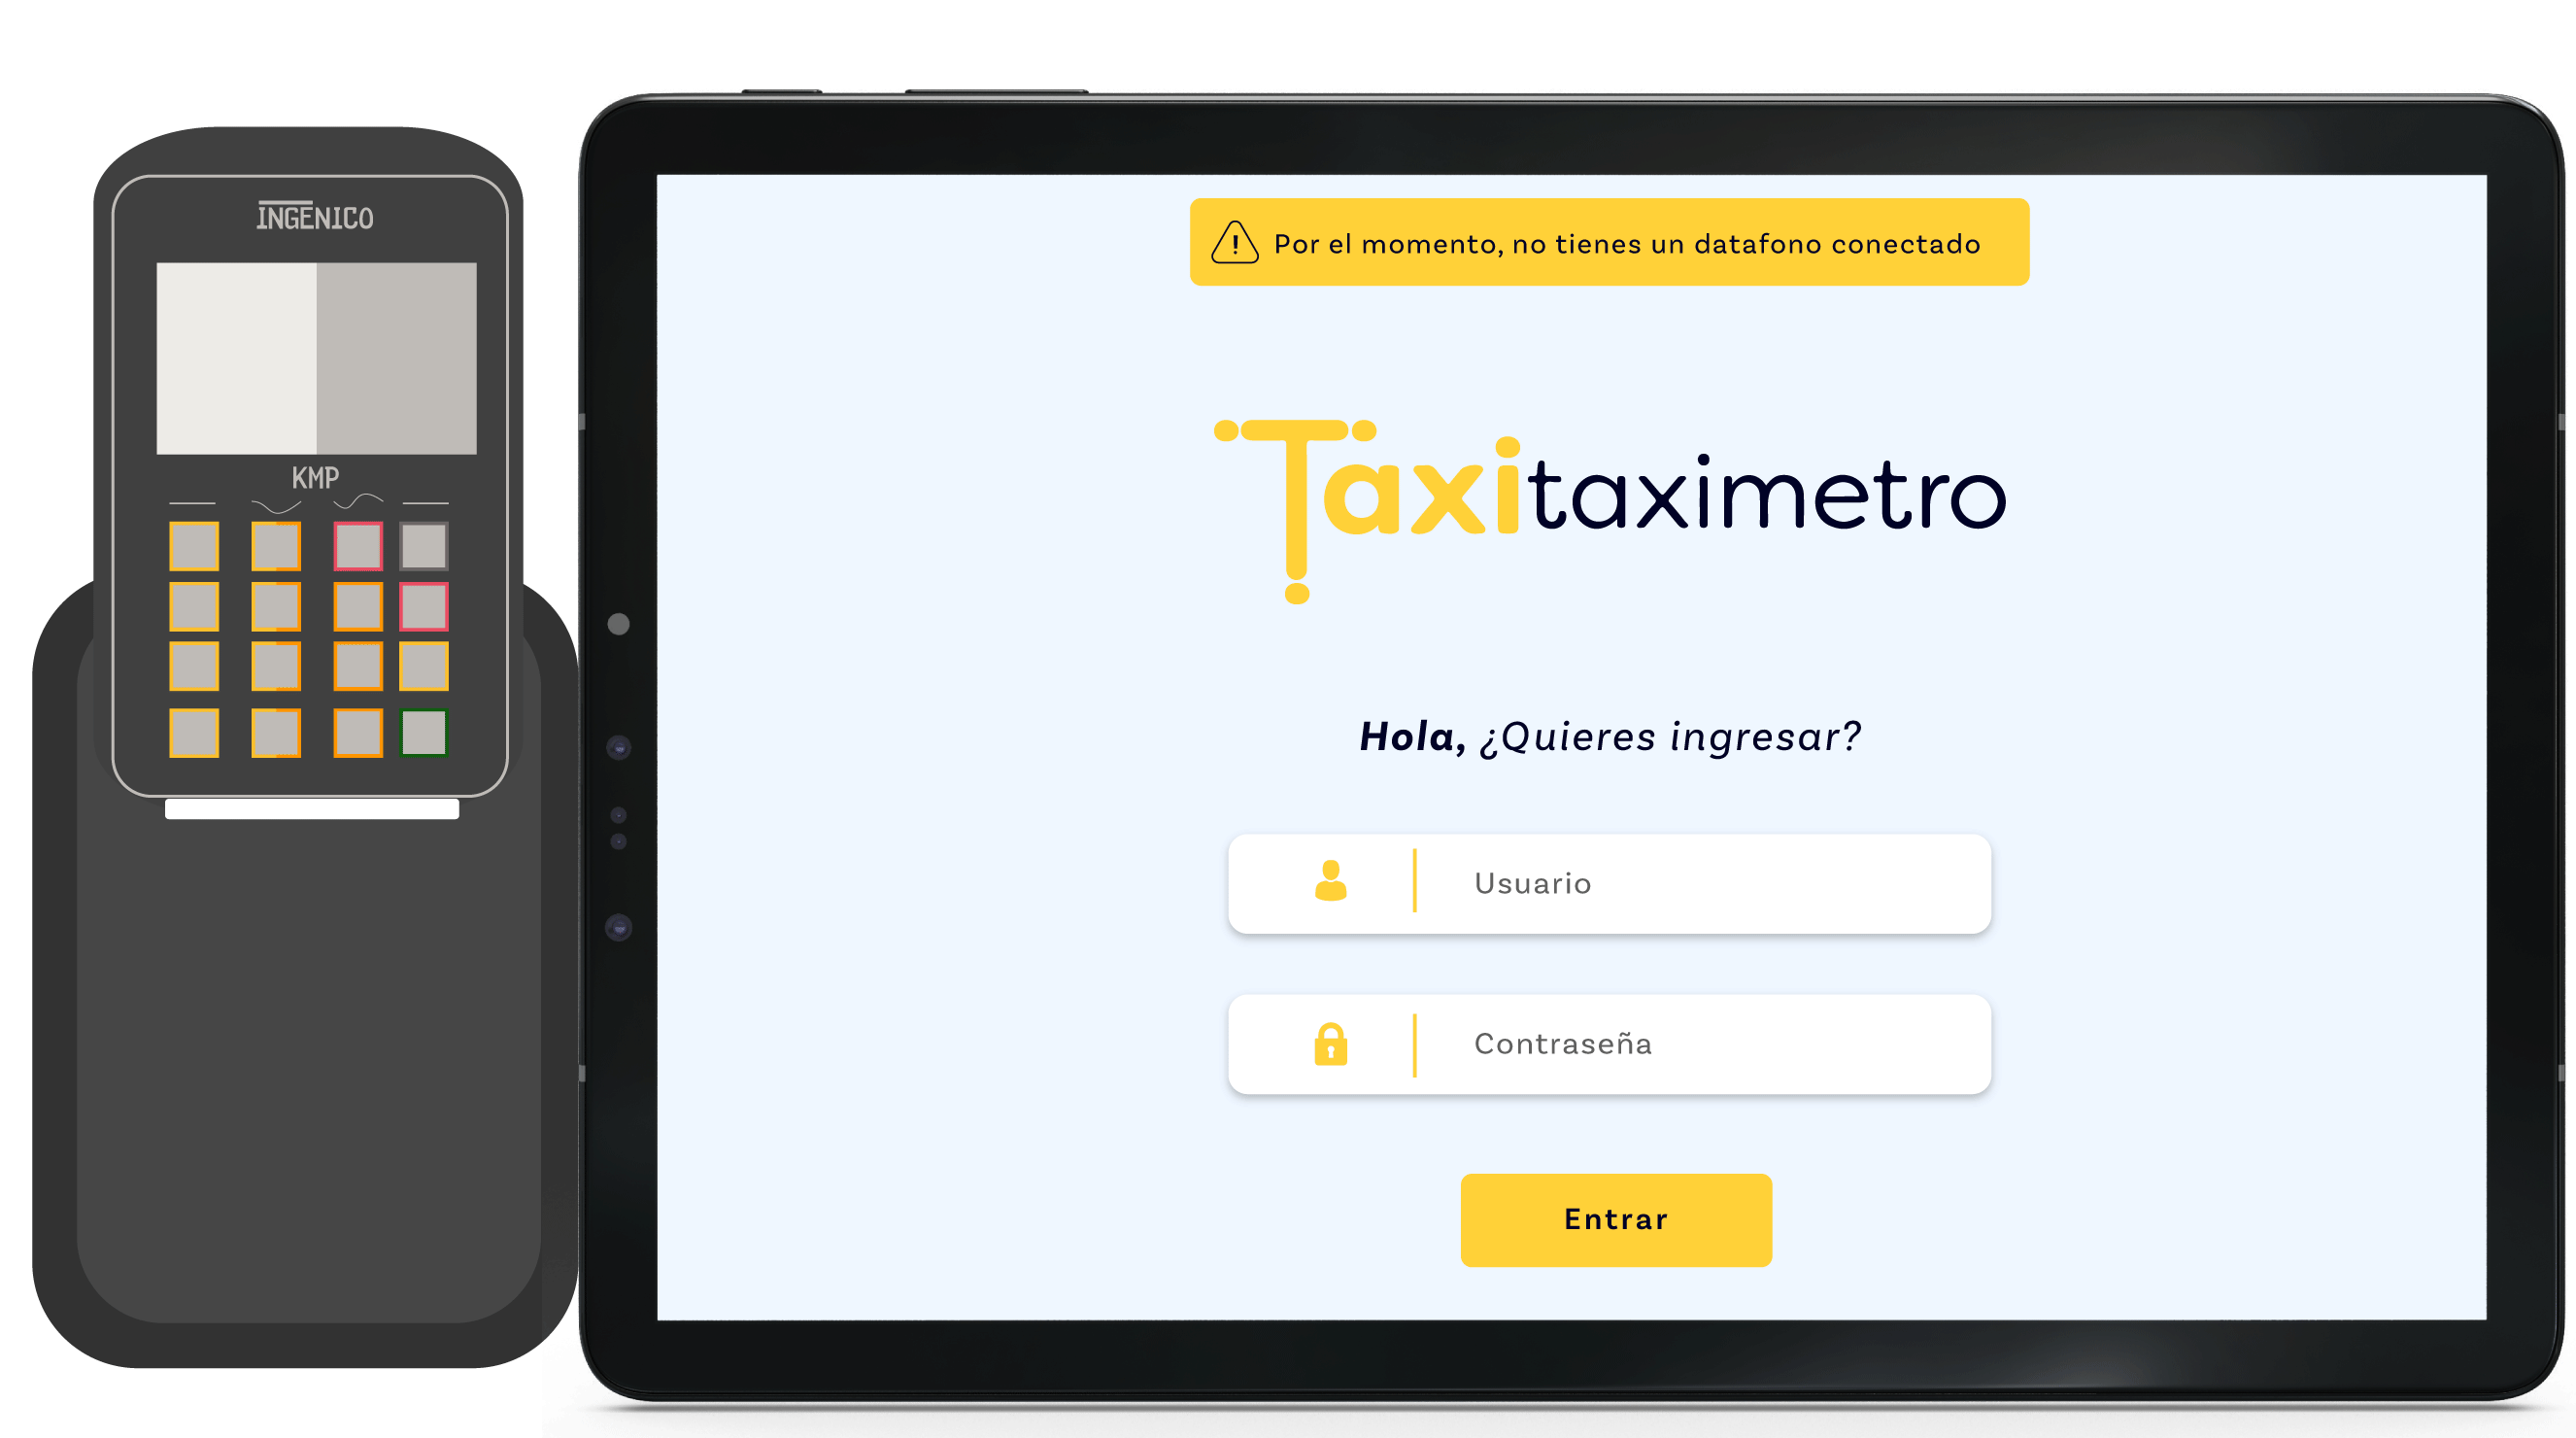 Taxitaximetro